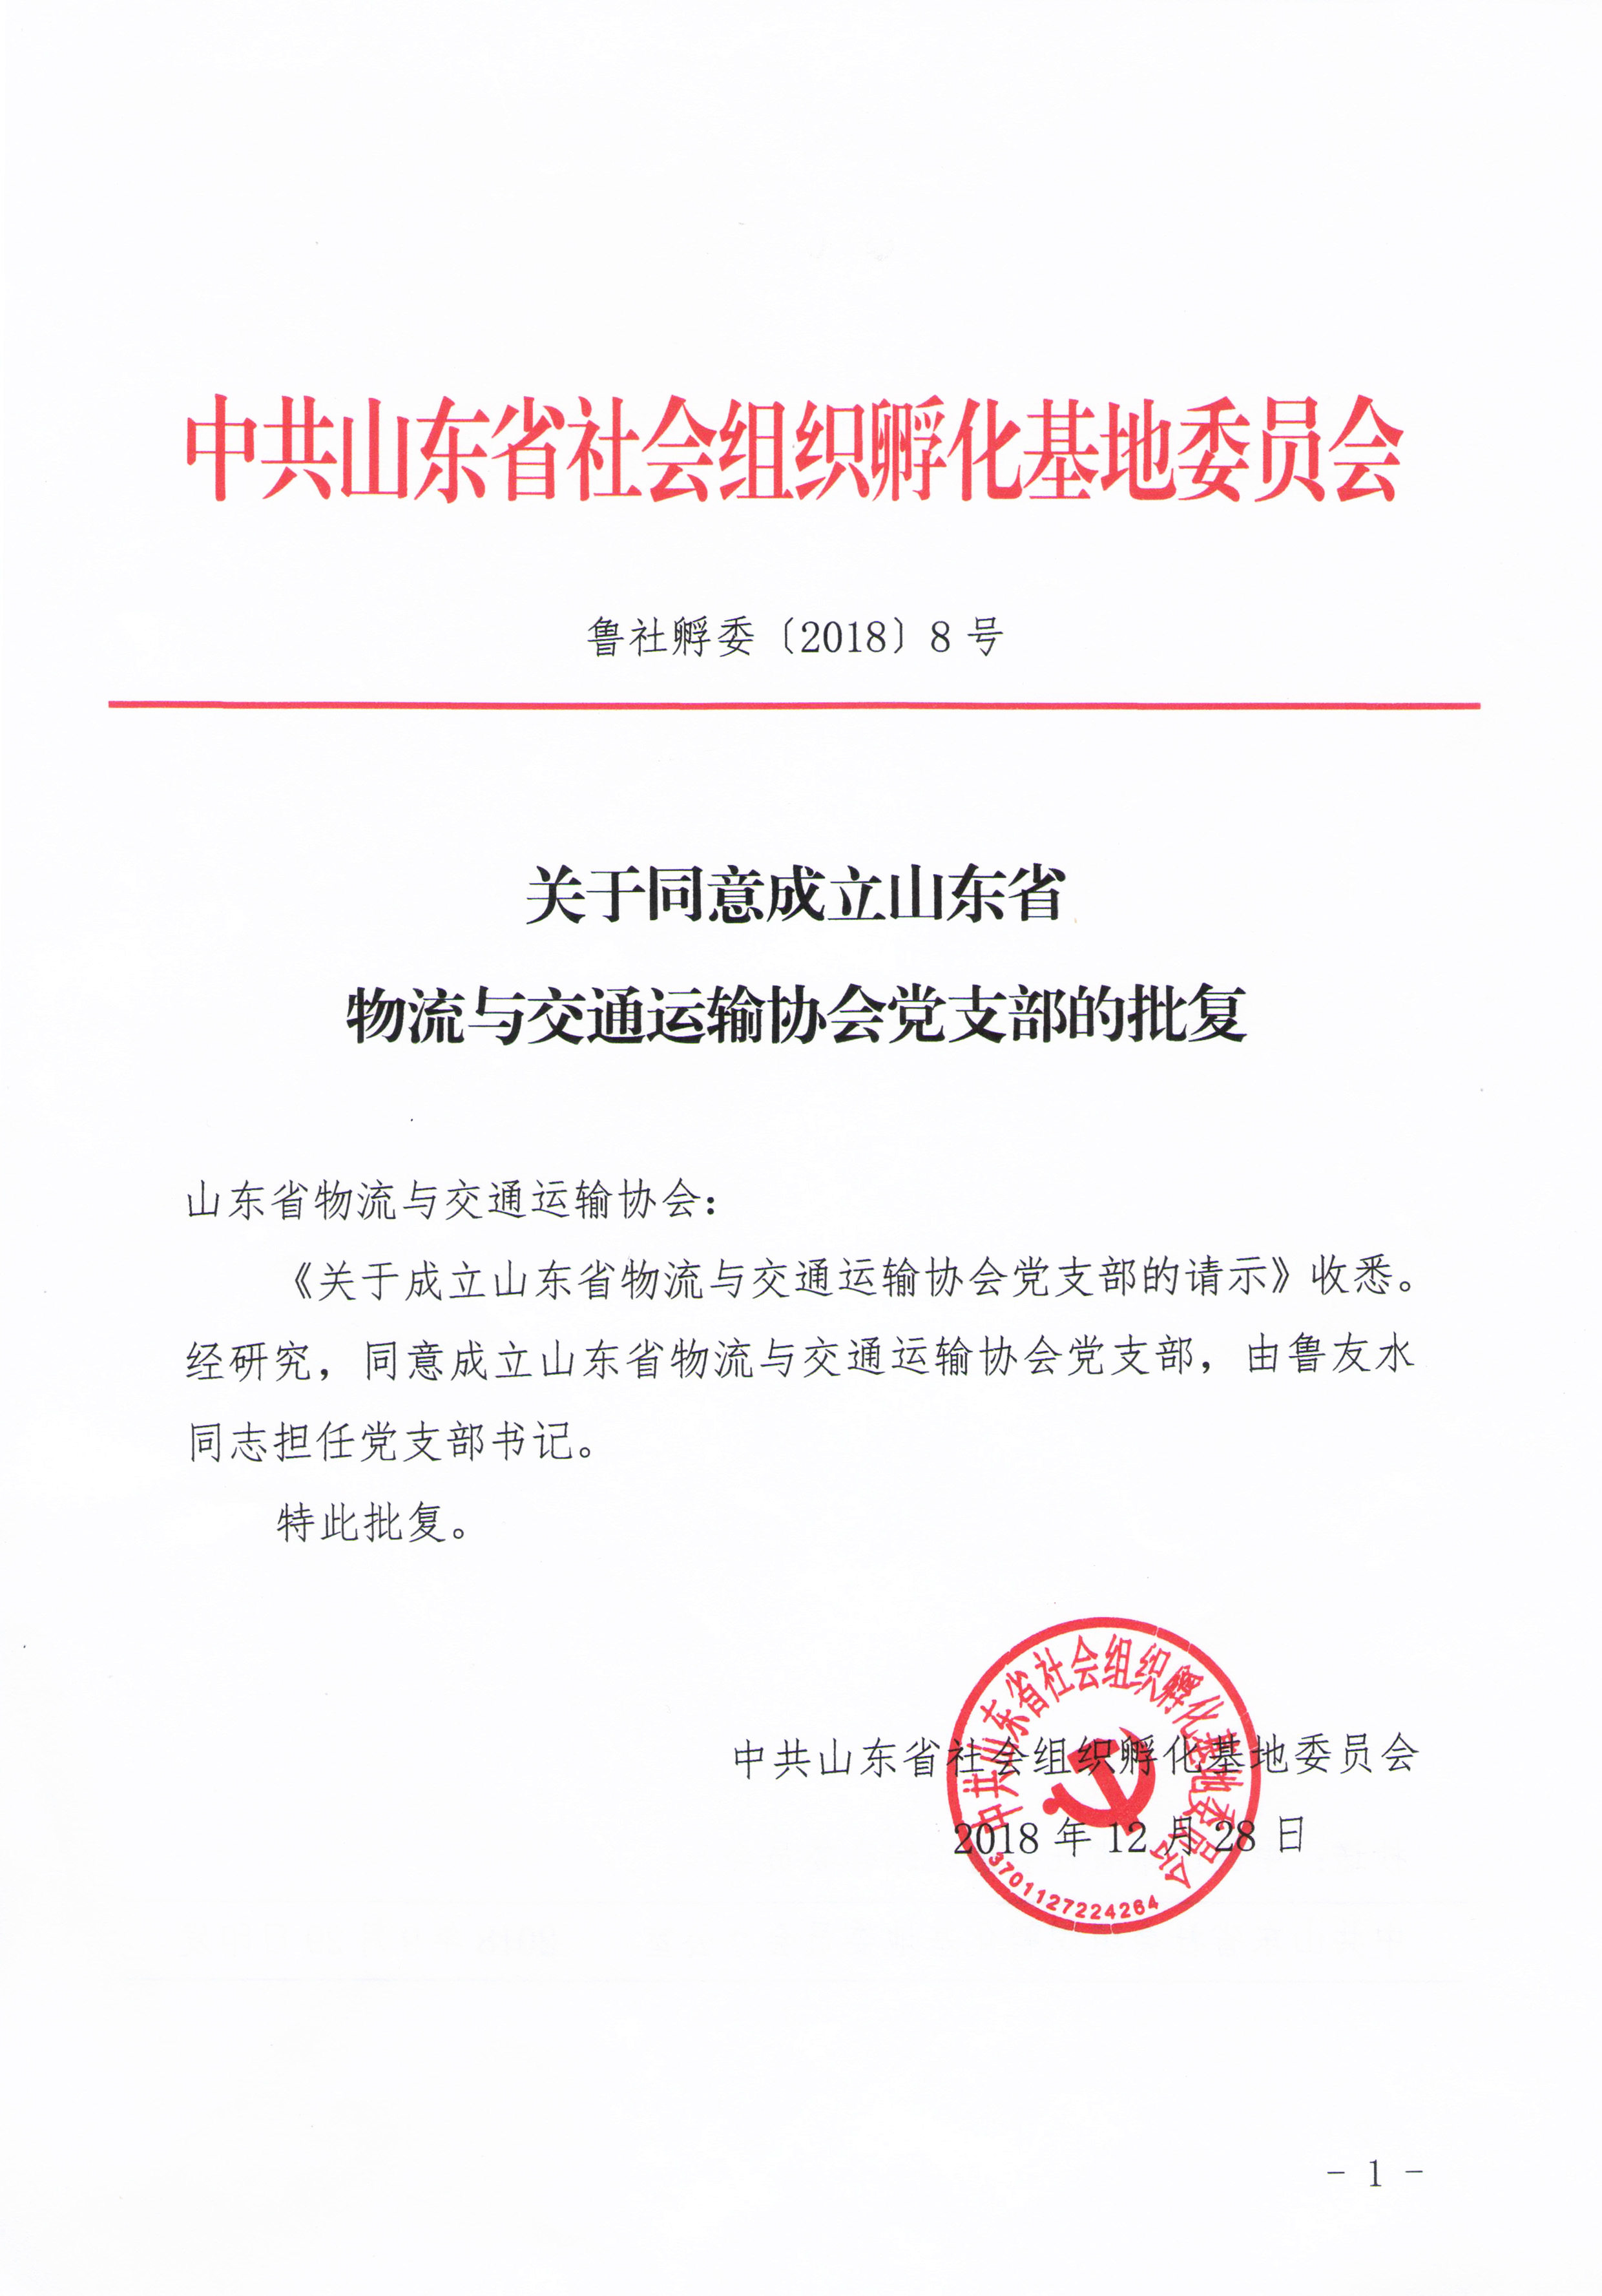 2018年12月   山东省物流与交通运输协会党支部成立.jpg